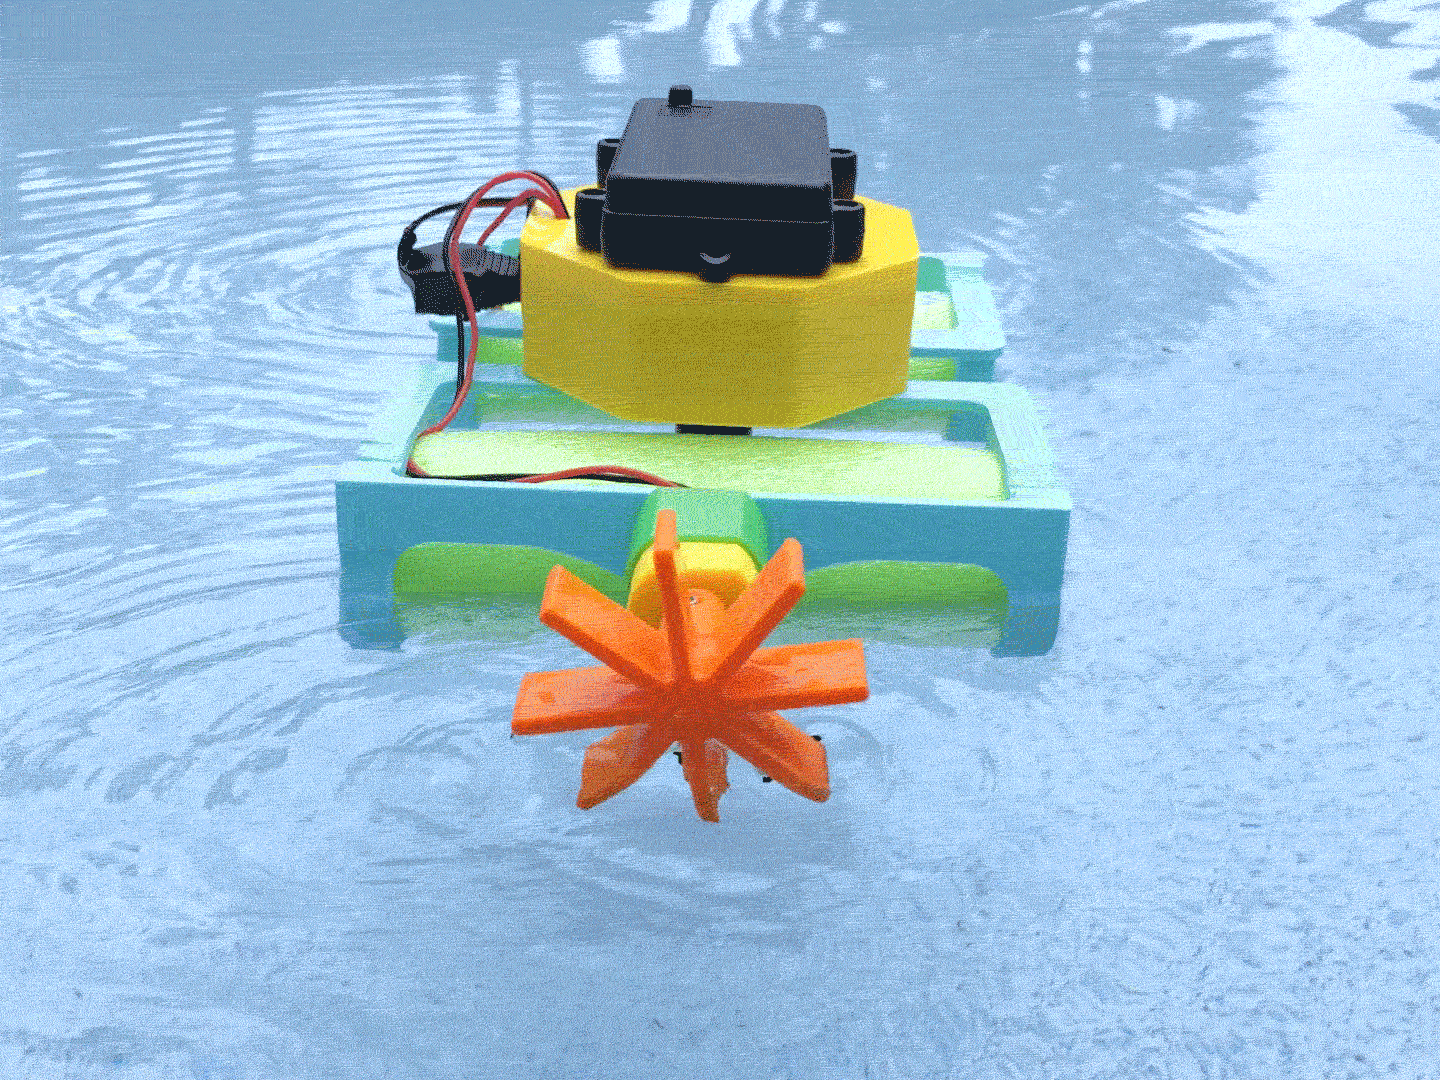 3d_printing_paddle-loop-sq.gif Download free STL file Crickit Paddle Wheel Boat • Template to 3D print, Adafruit